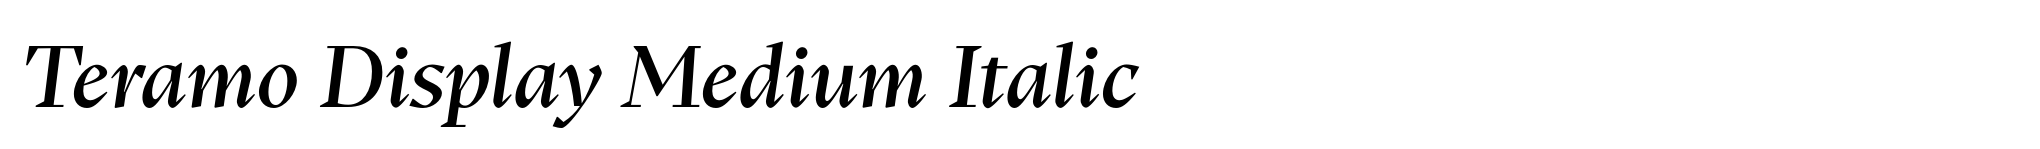 Teramo Display Medium Italic image